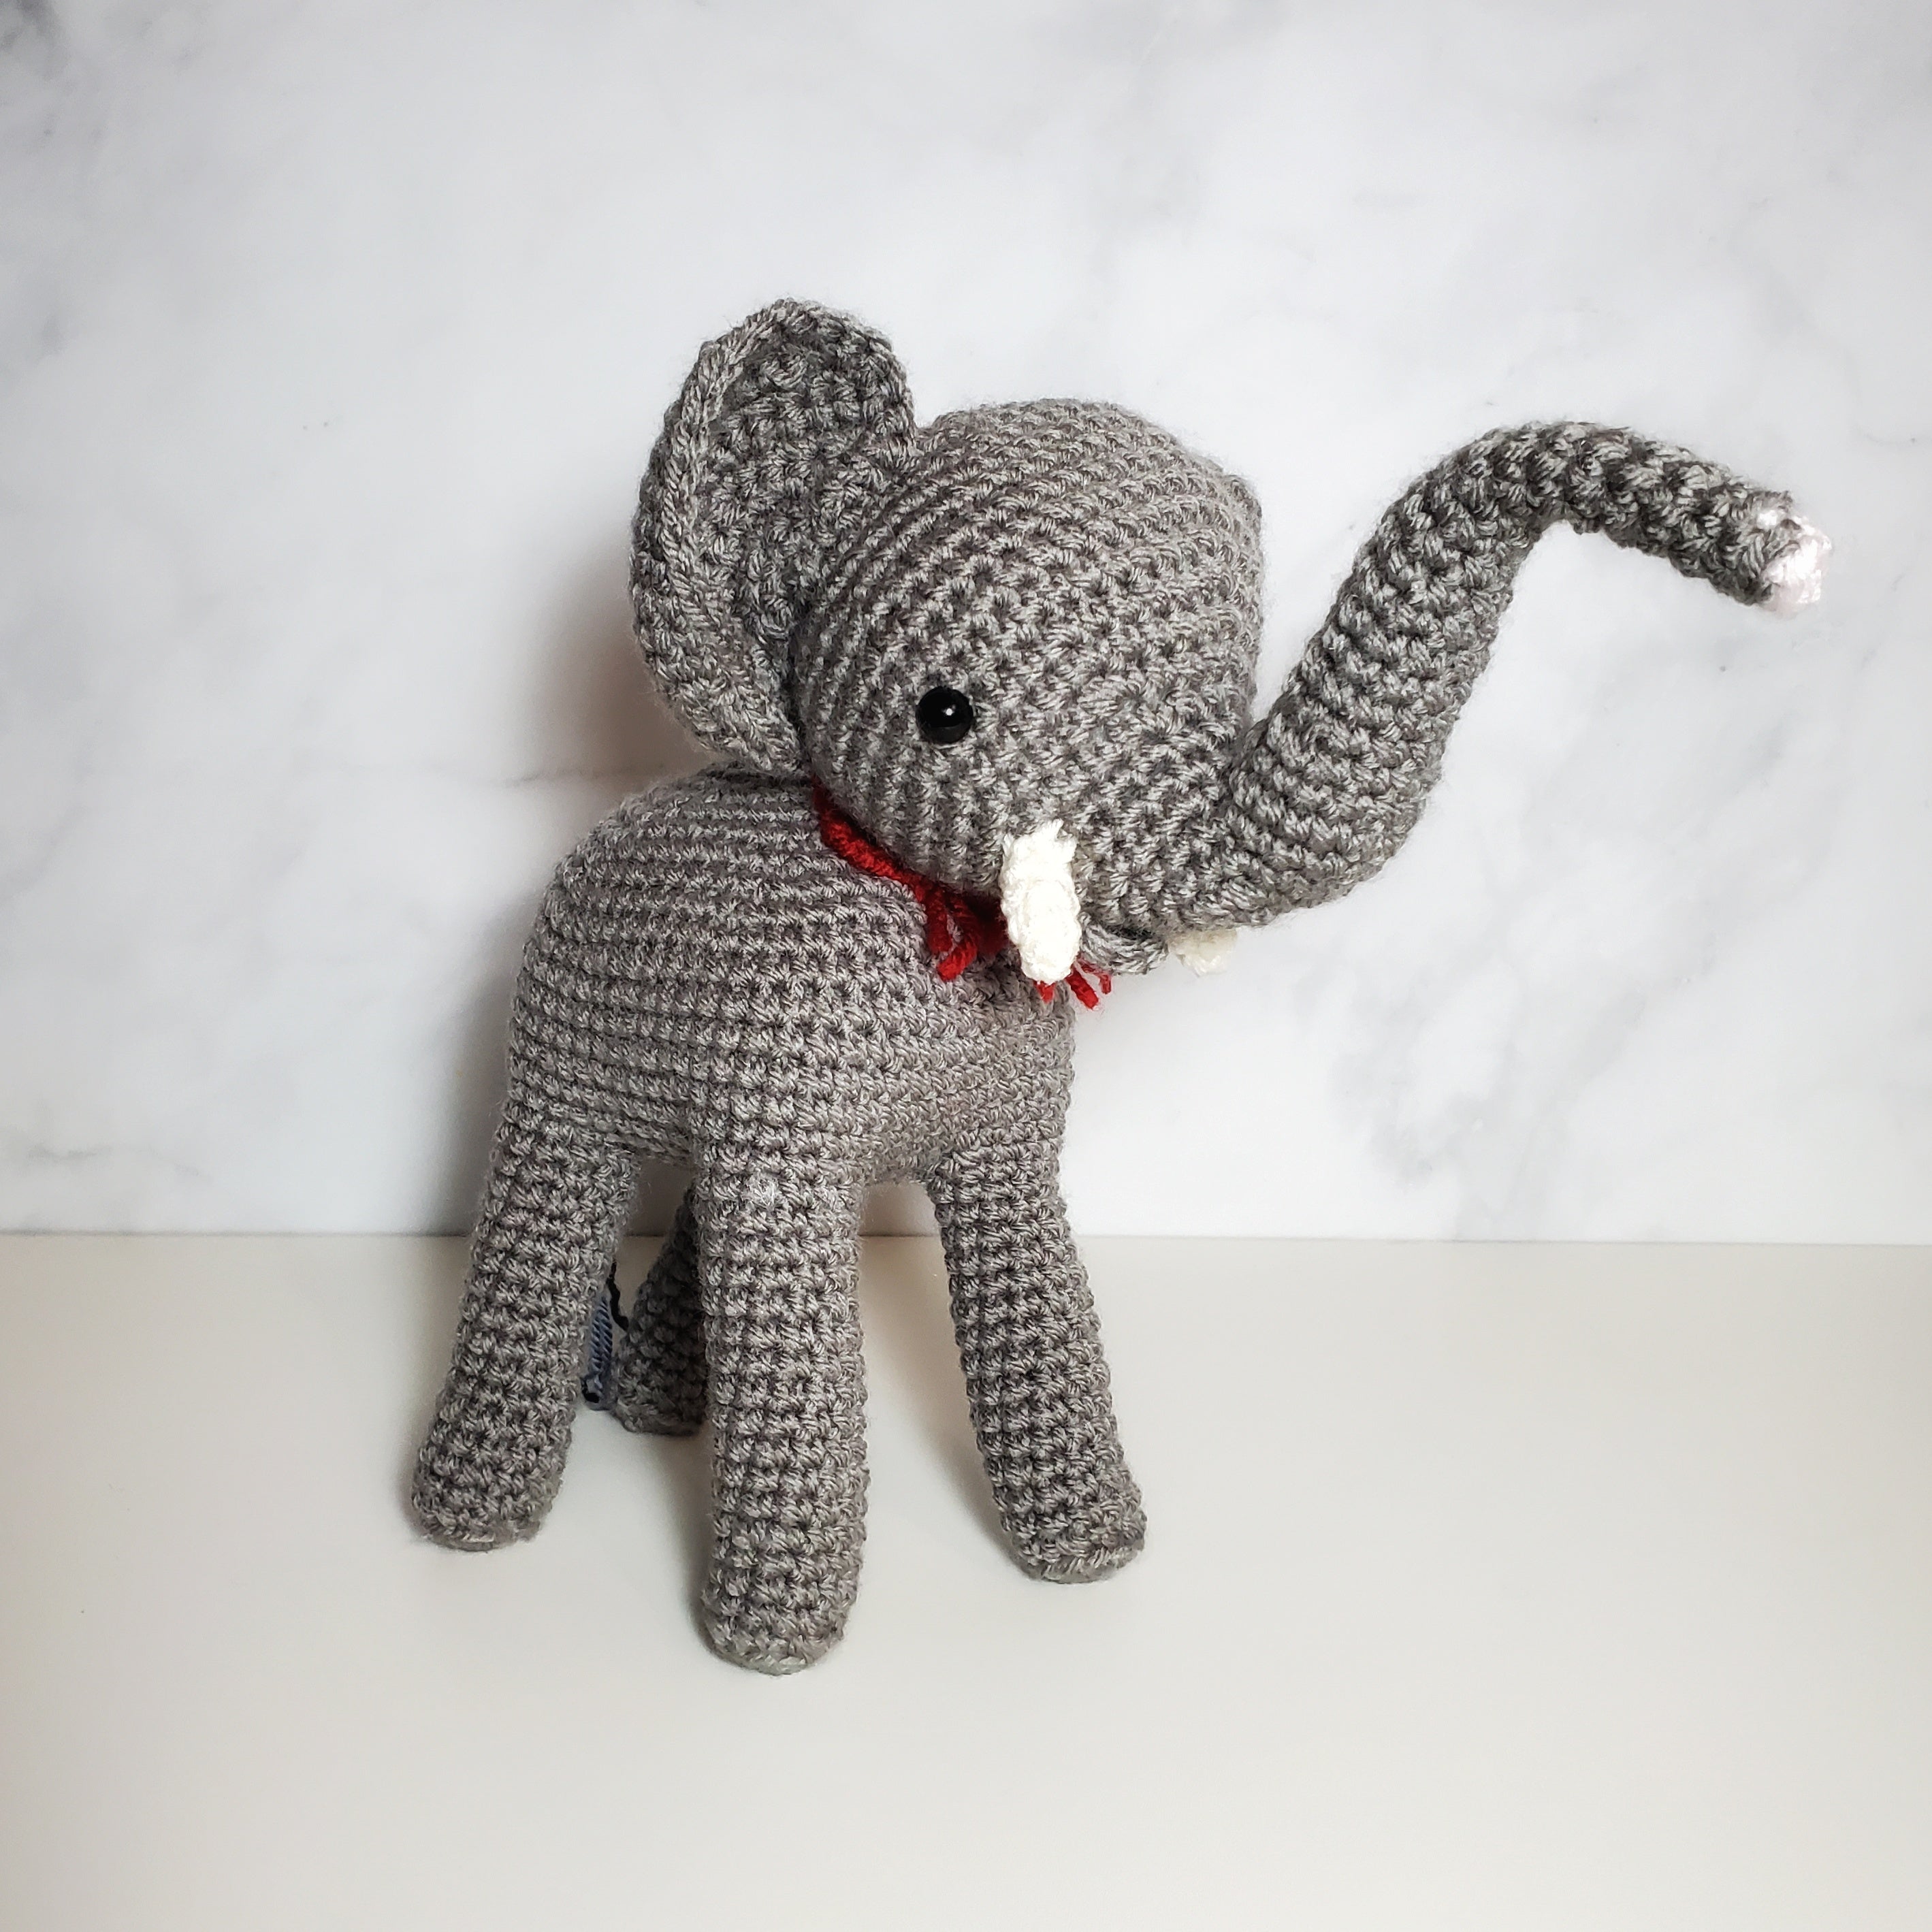 Elephant Plush Toy - 10IN